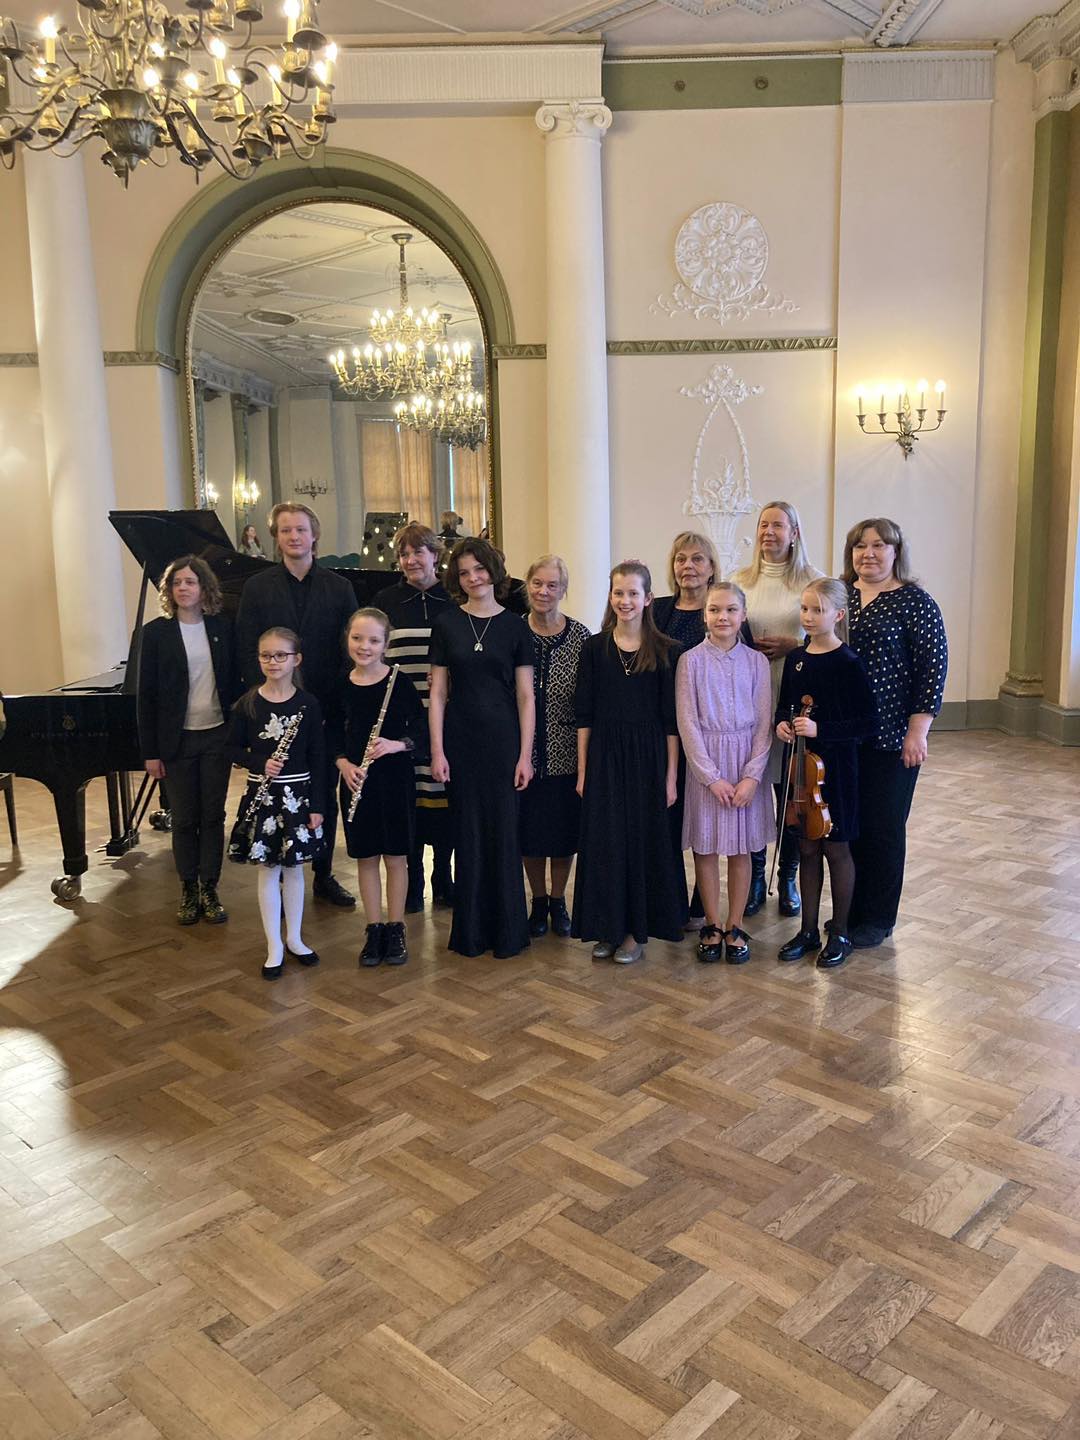 Mūzikas skolas audzēkņi pēc konkursa sapulcējušies uz kopbildi Rīgas Latviešu biedrības nama greznajā zālē